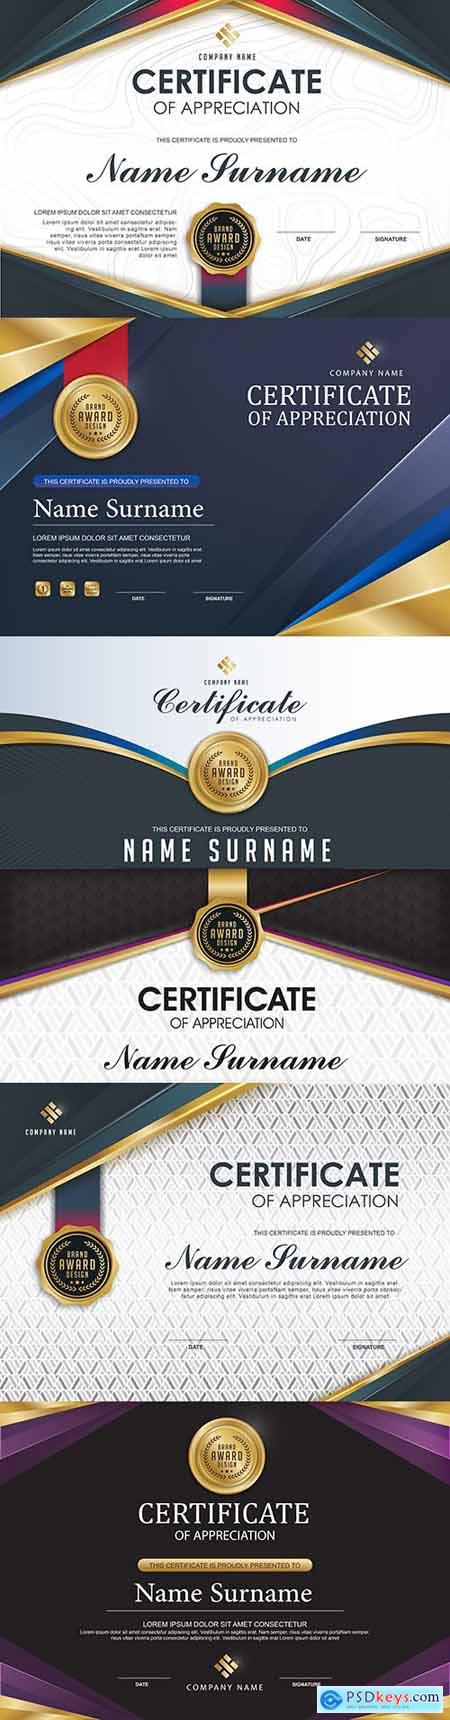 Luxury certificate of gratitude template award design 2